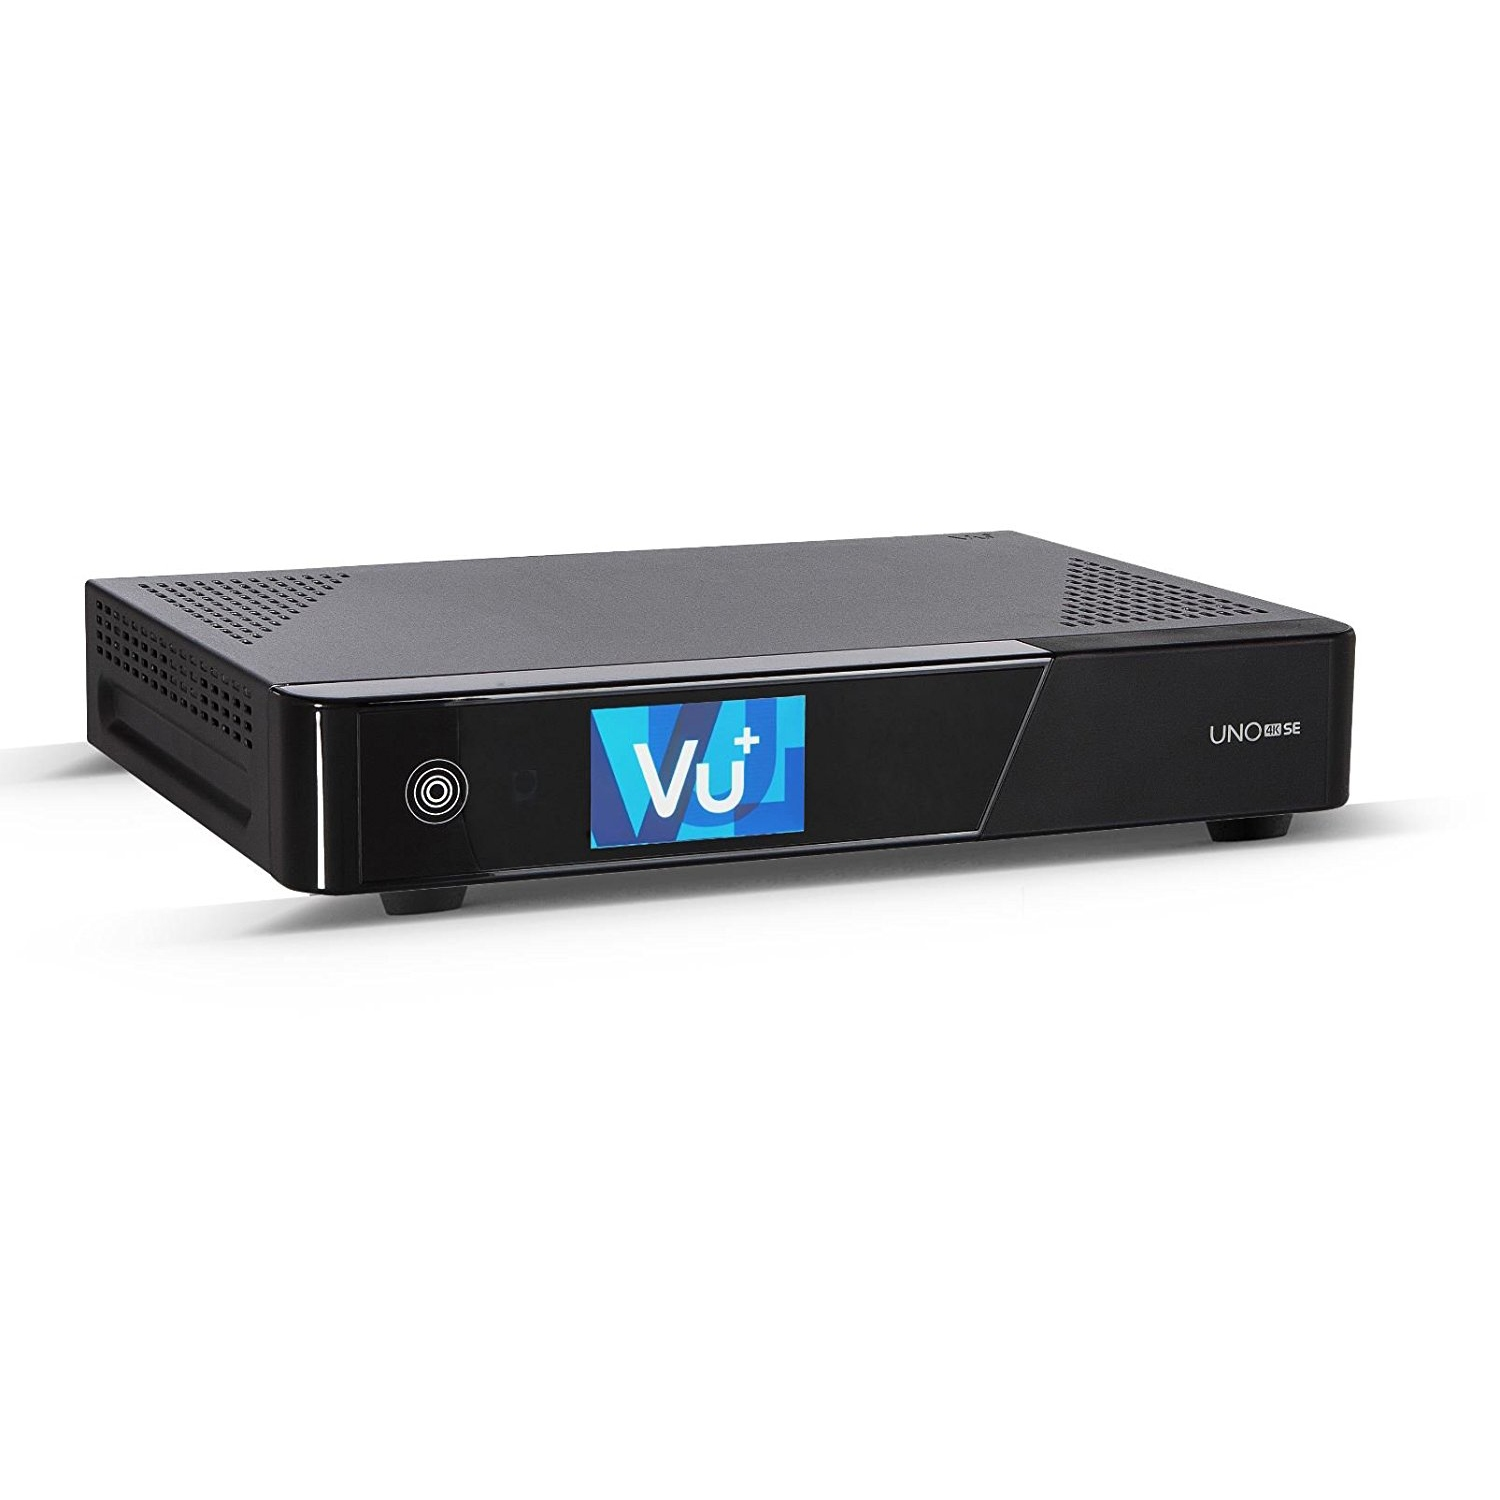 DVB-S2X Tuner, Uno VU+ FBC 4K Sat 2TB DVB-S2, Twin SE Schwarz) Receiver (PVR-Funktion,